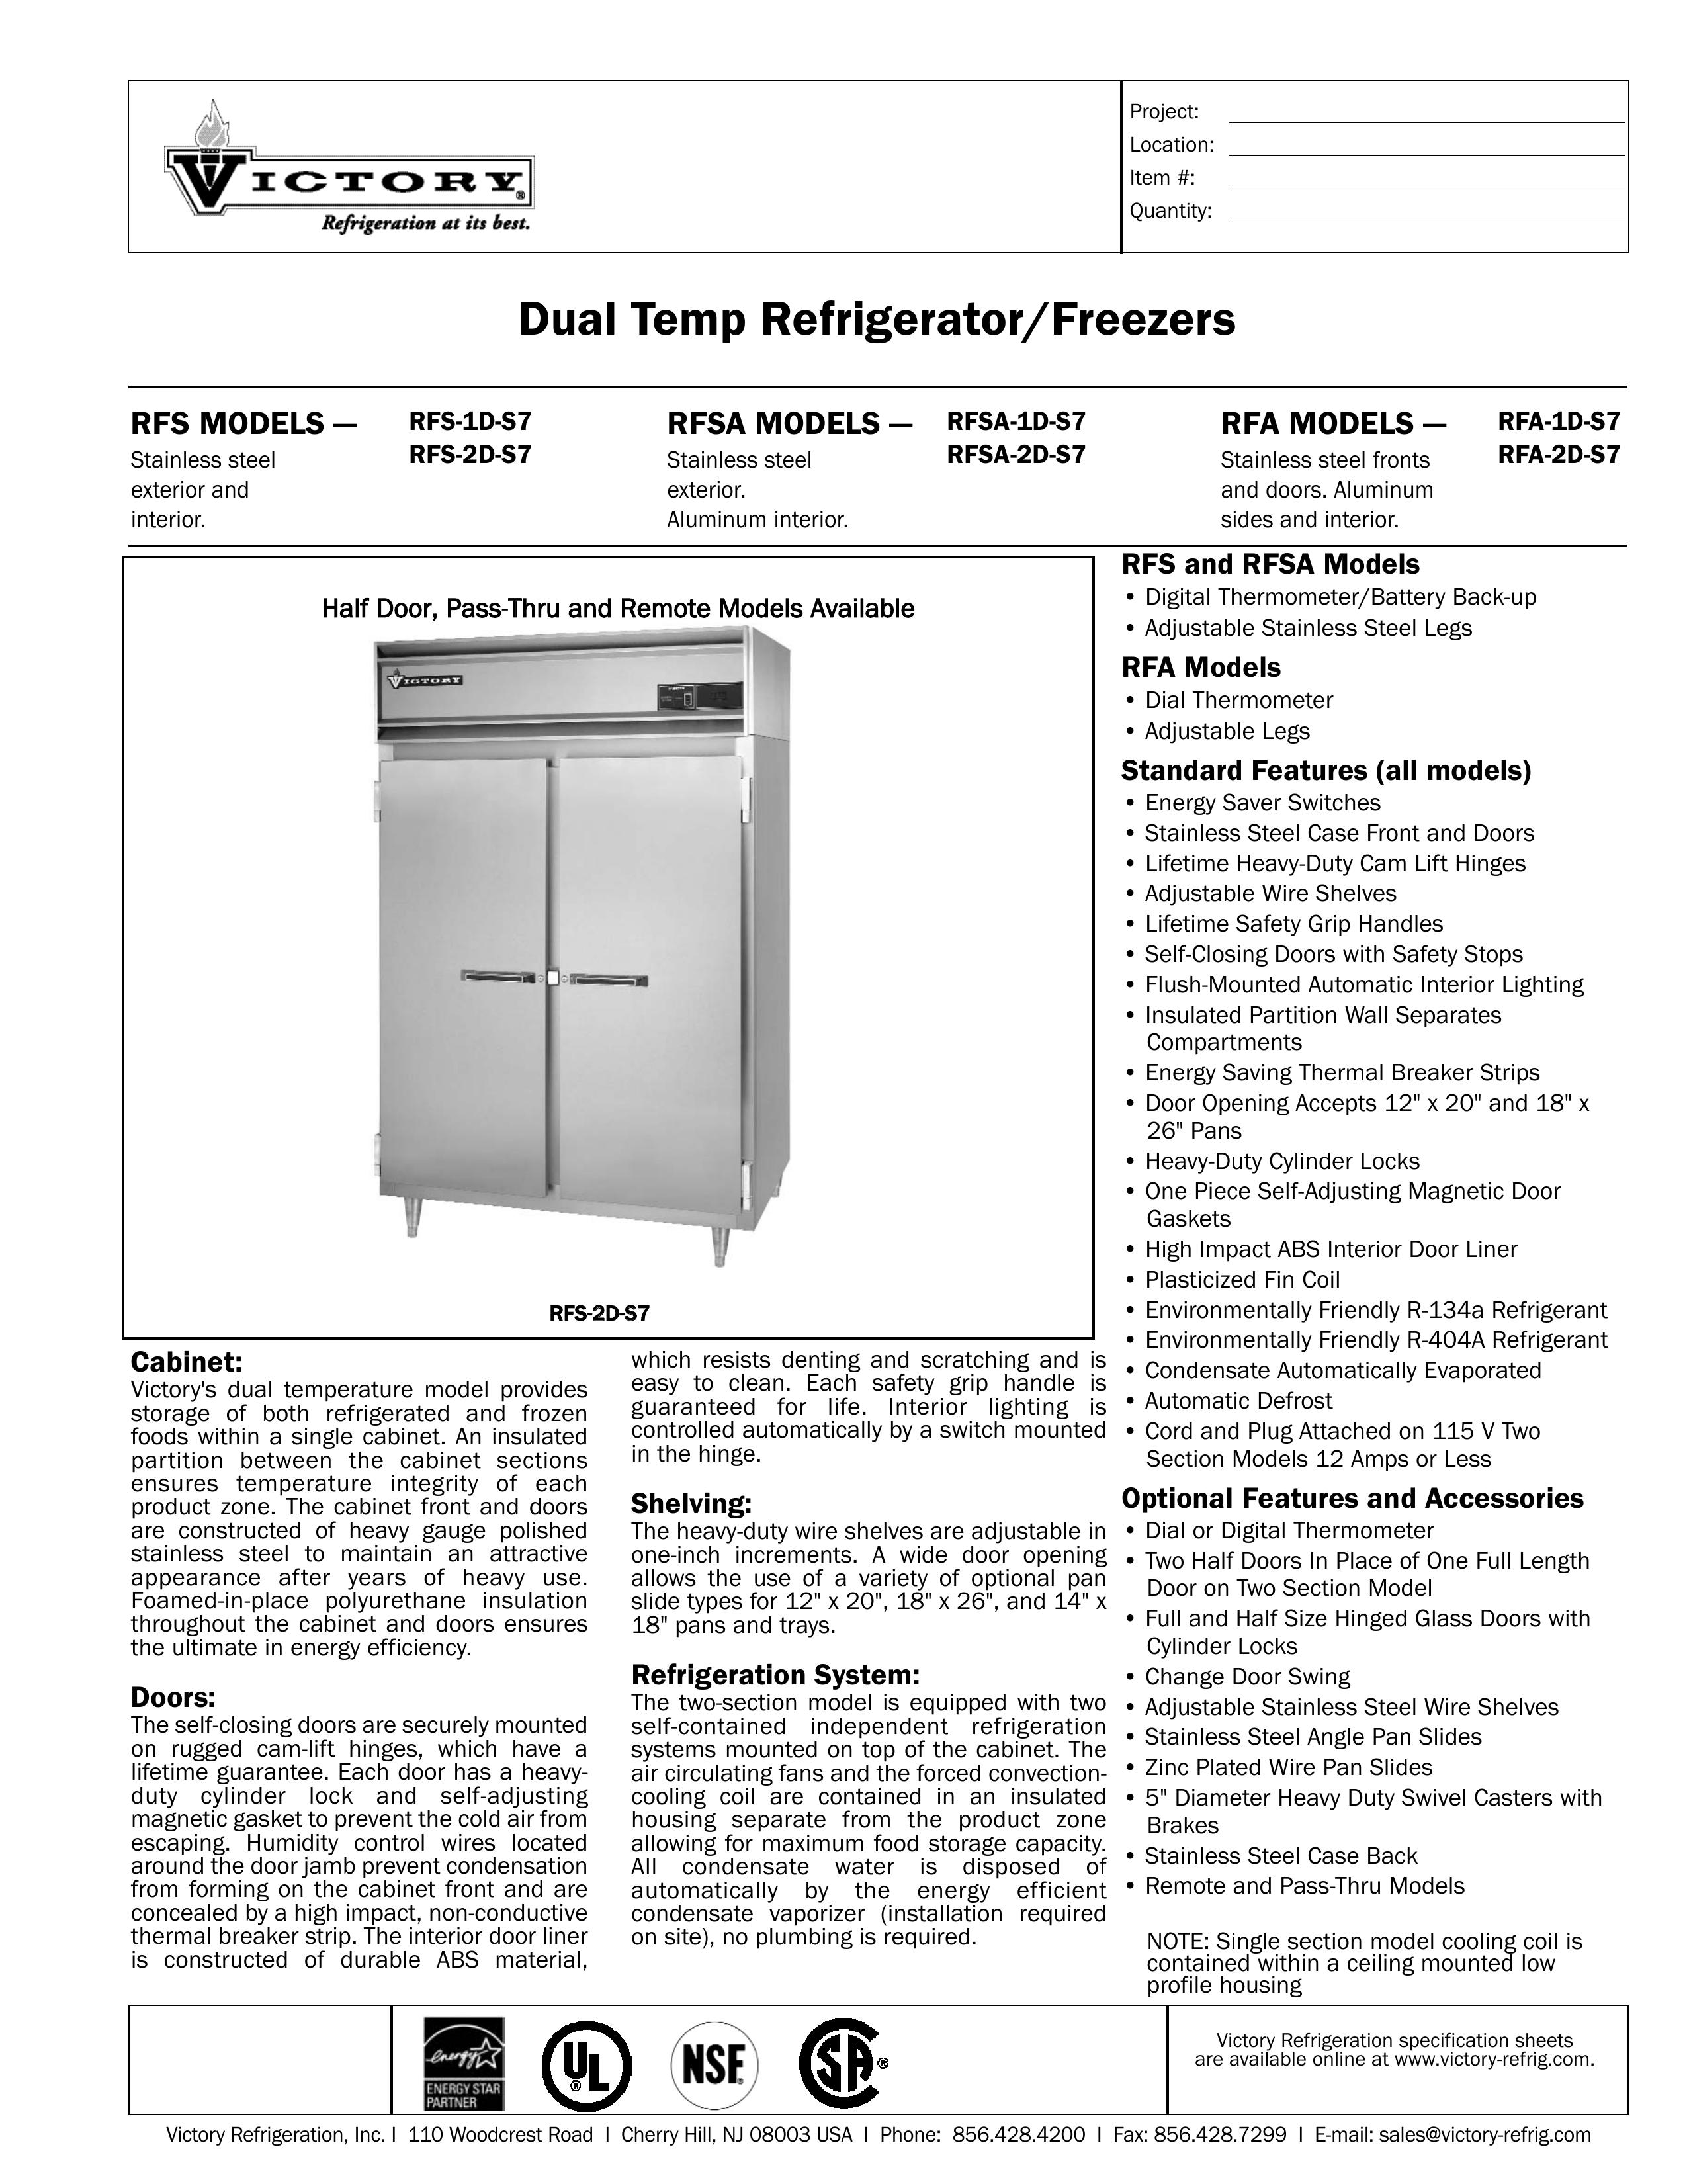 Victory Refrigeration RFA-2D-S7 Refrigerator User Manual